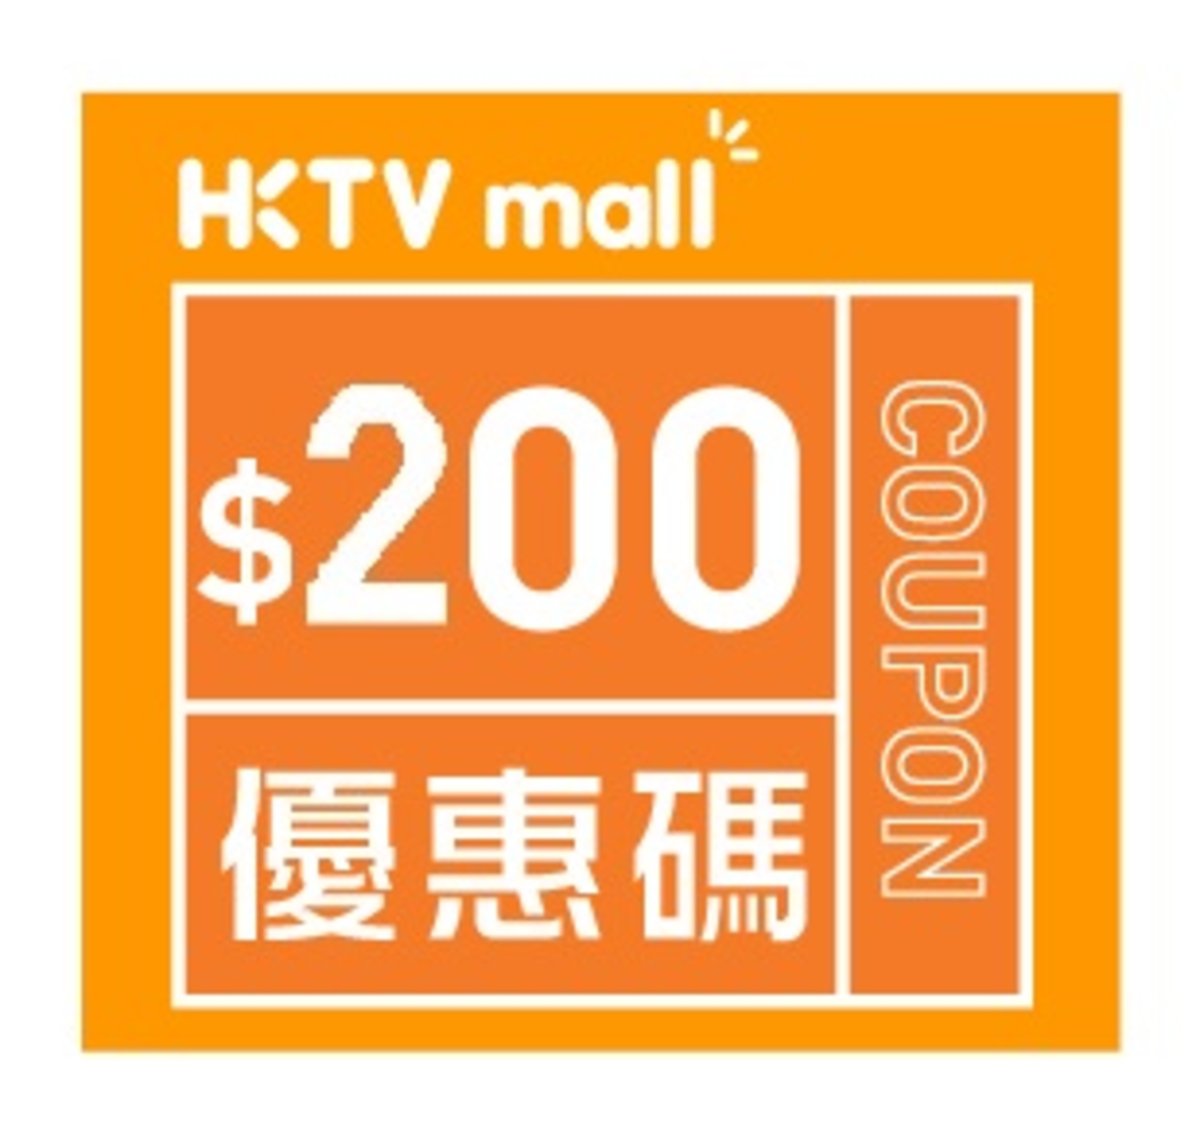 HKTVmall $200購物優惠碼購買精選嬰兒產品 [有效日期： 2020.03.24 - 2020.06.06]